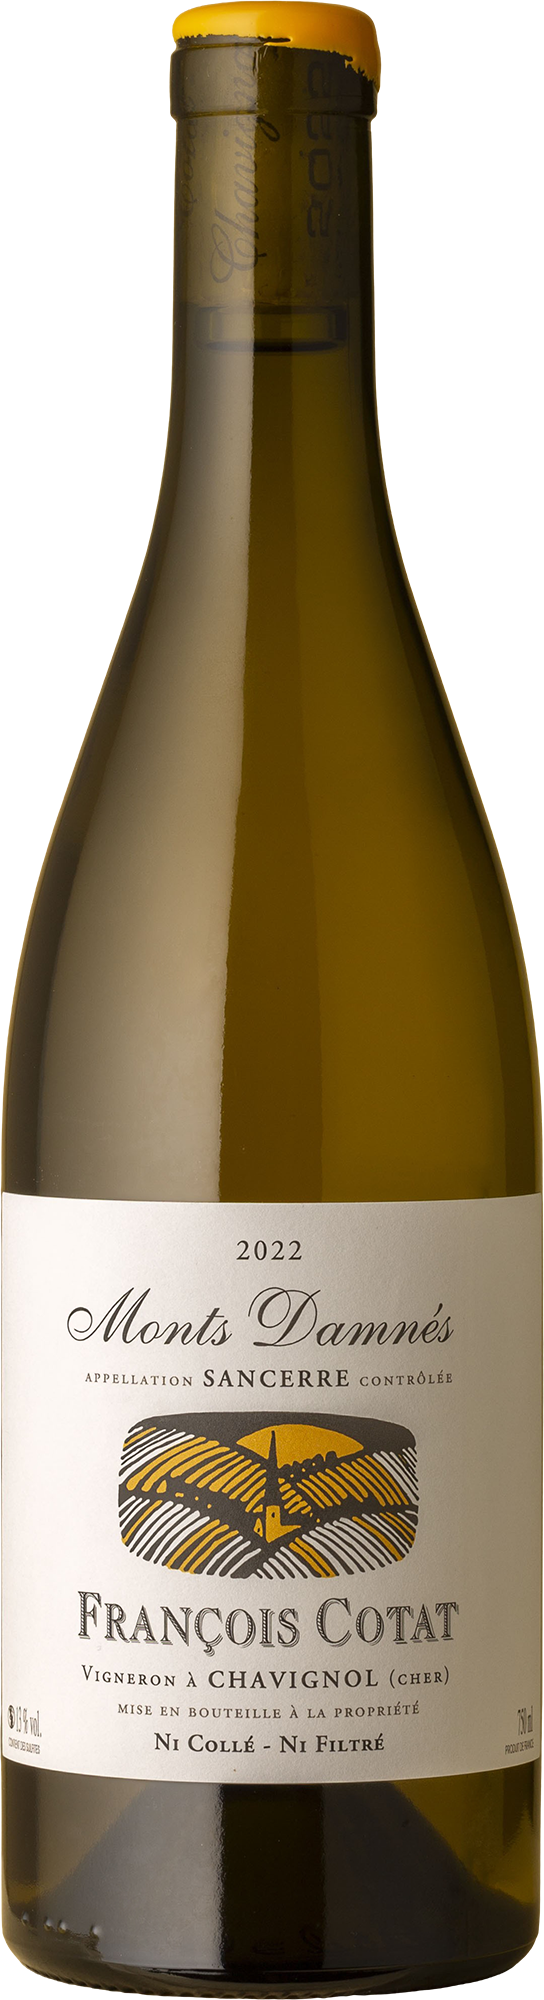 François Cotat - Monts Damnés Sancerre Sauvignon Blanc 2022 White Wine